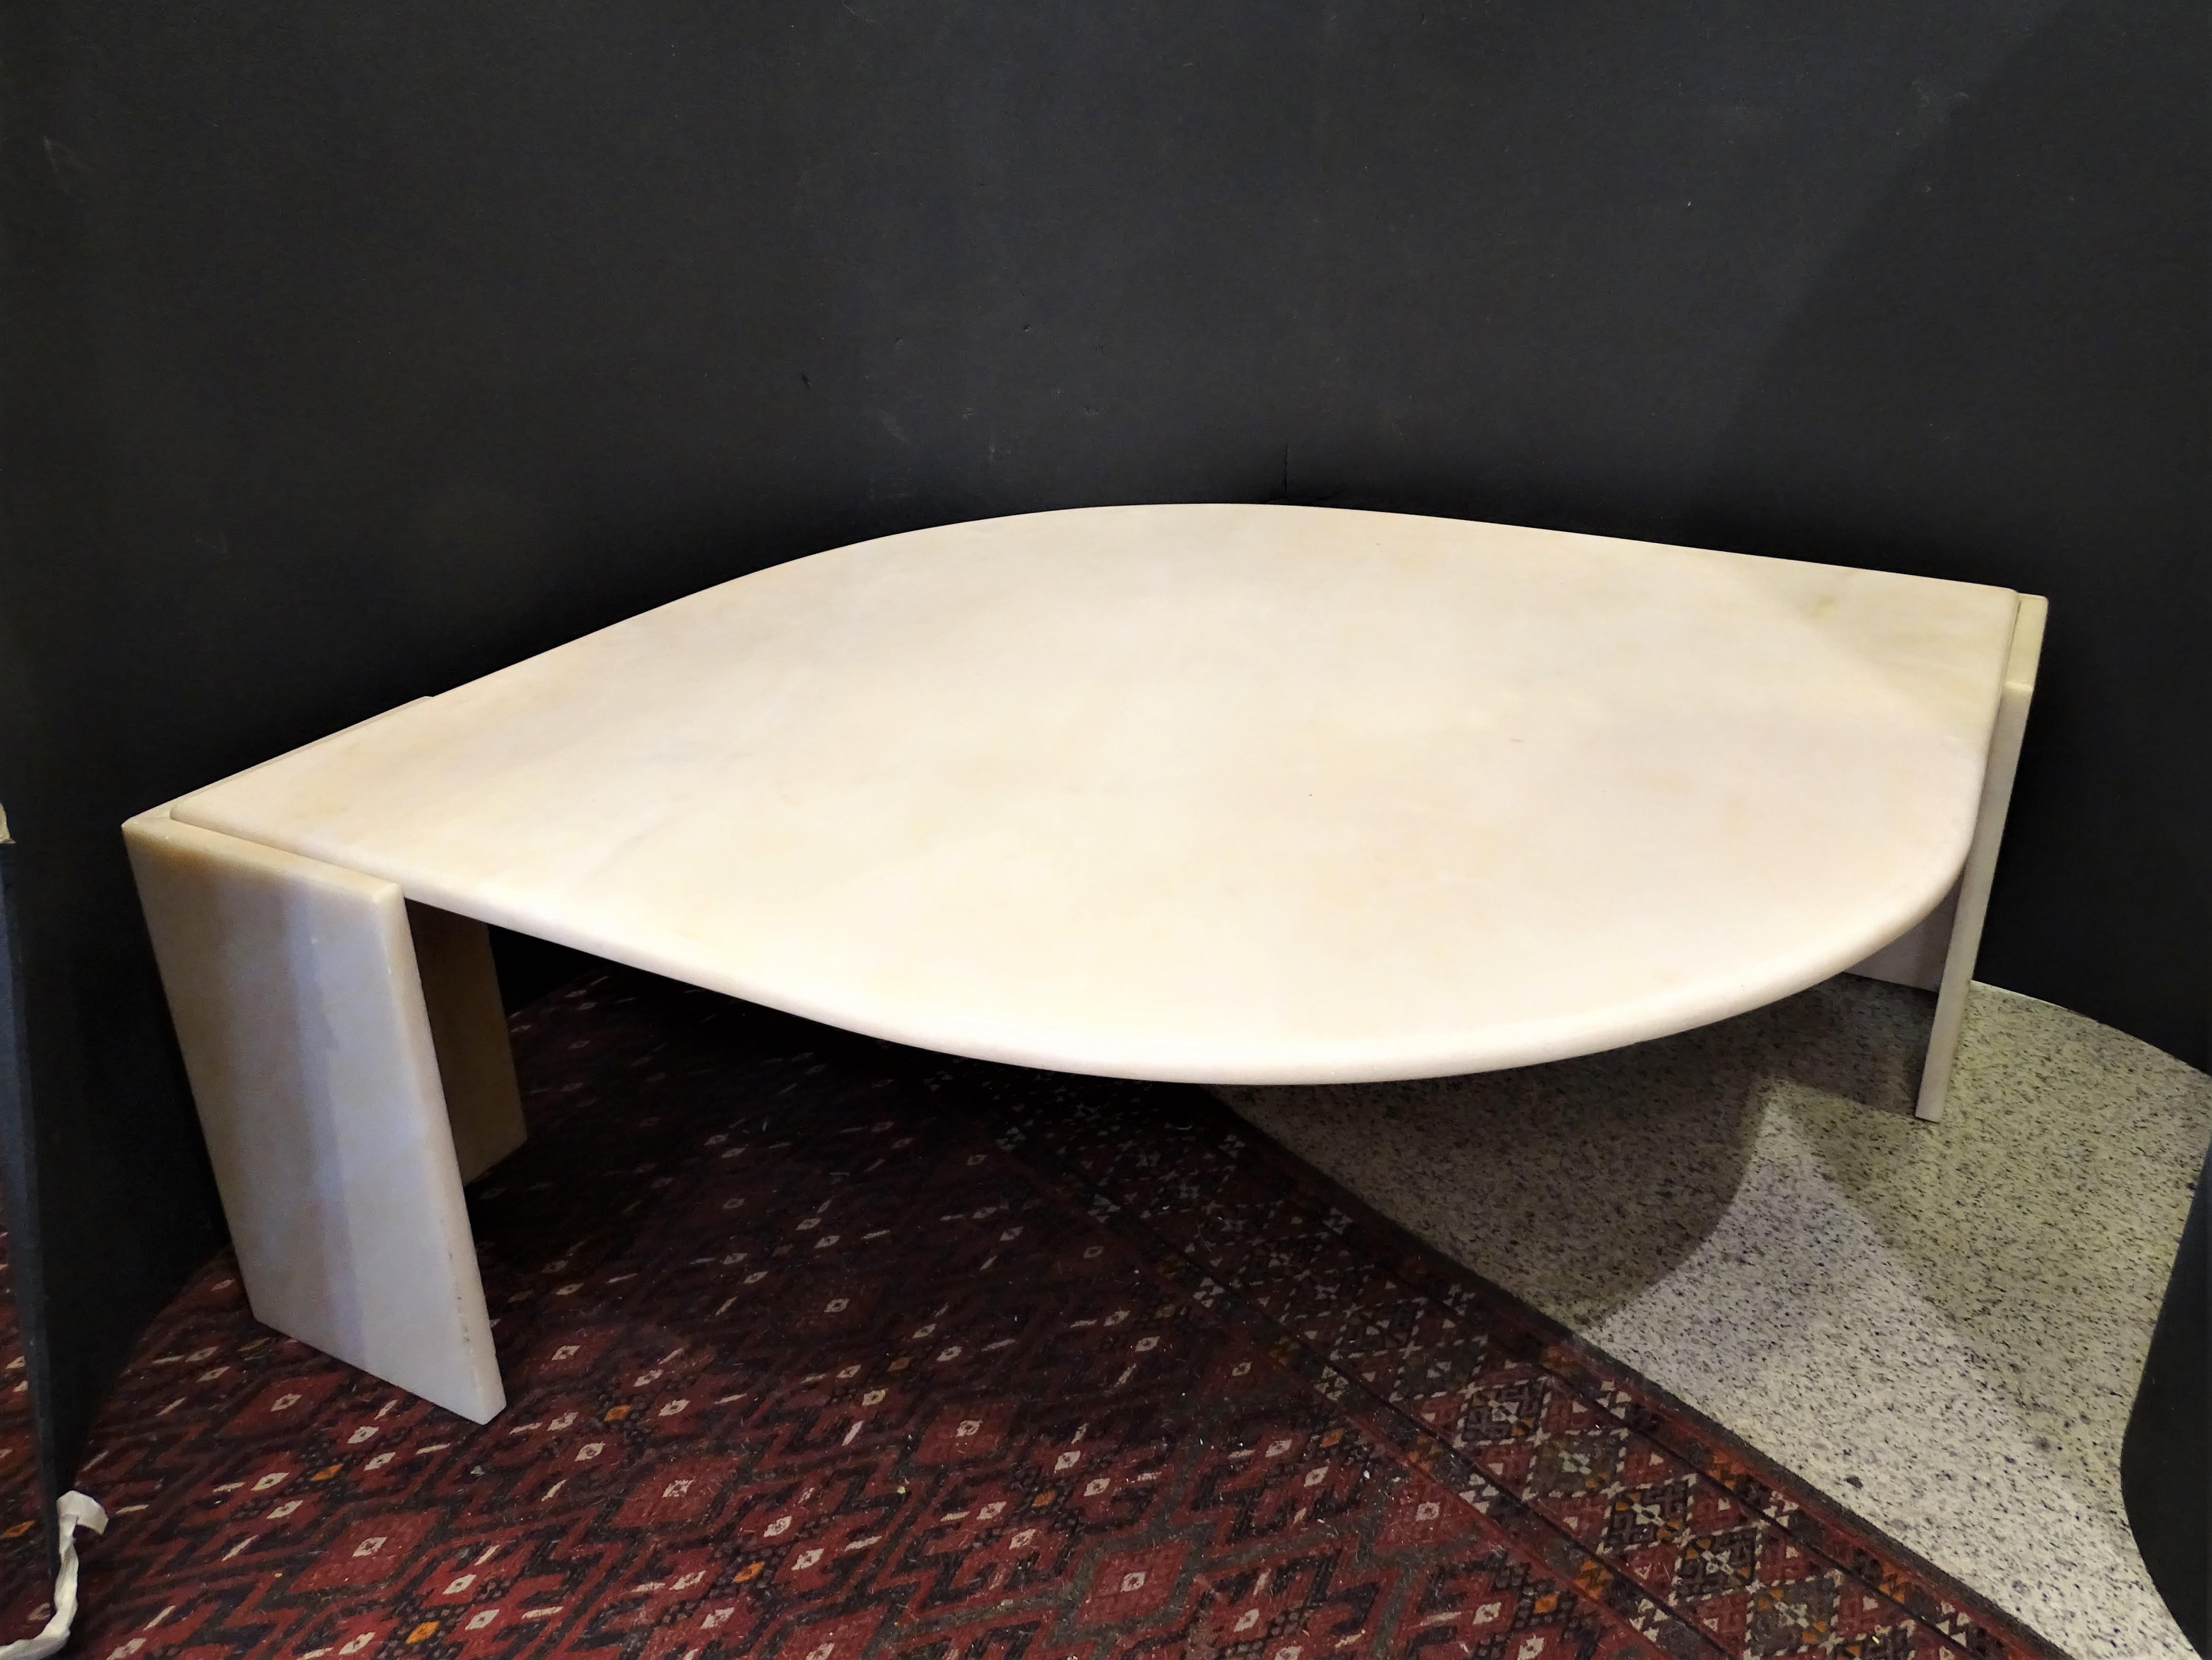 Étonnante table basse, design français, par Roche Bobois 1970. Réalisé en marbre travertin.
Il y a une grande pièce centrale dans  déchiré et deux pièces aux extrémités le soutenant 

Design du milieu du siècle connu sous le nom de 